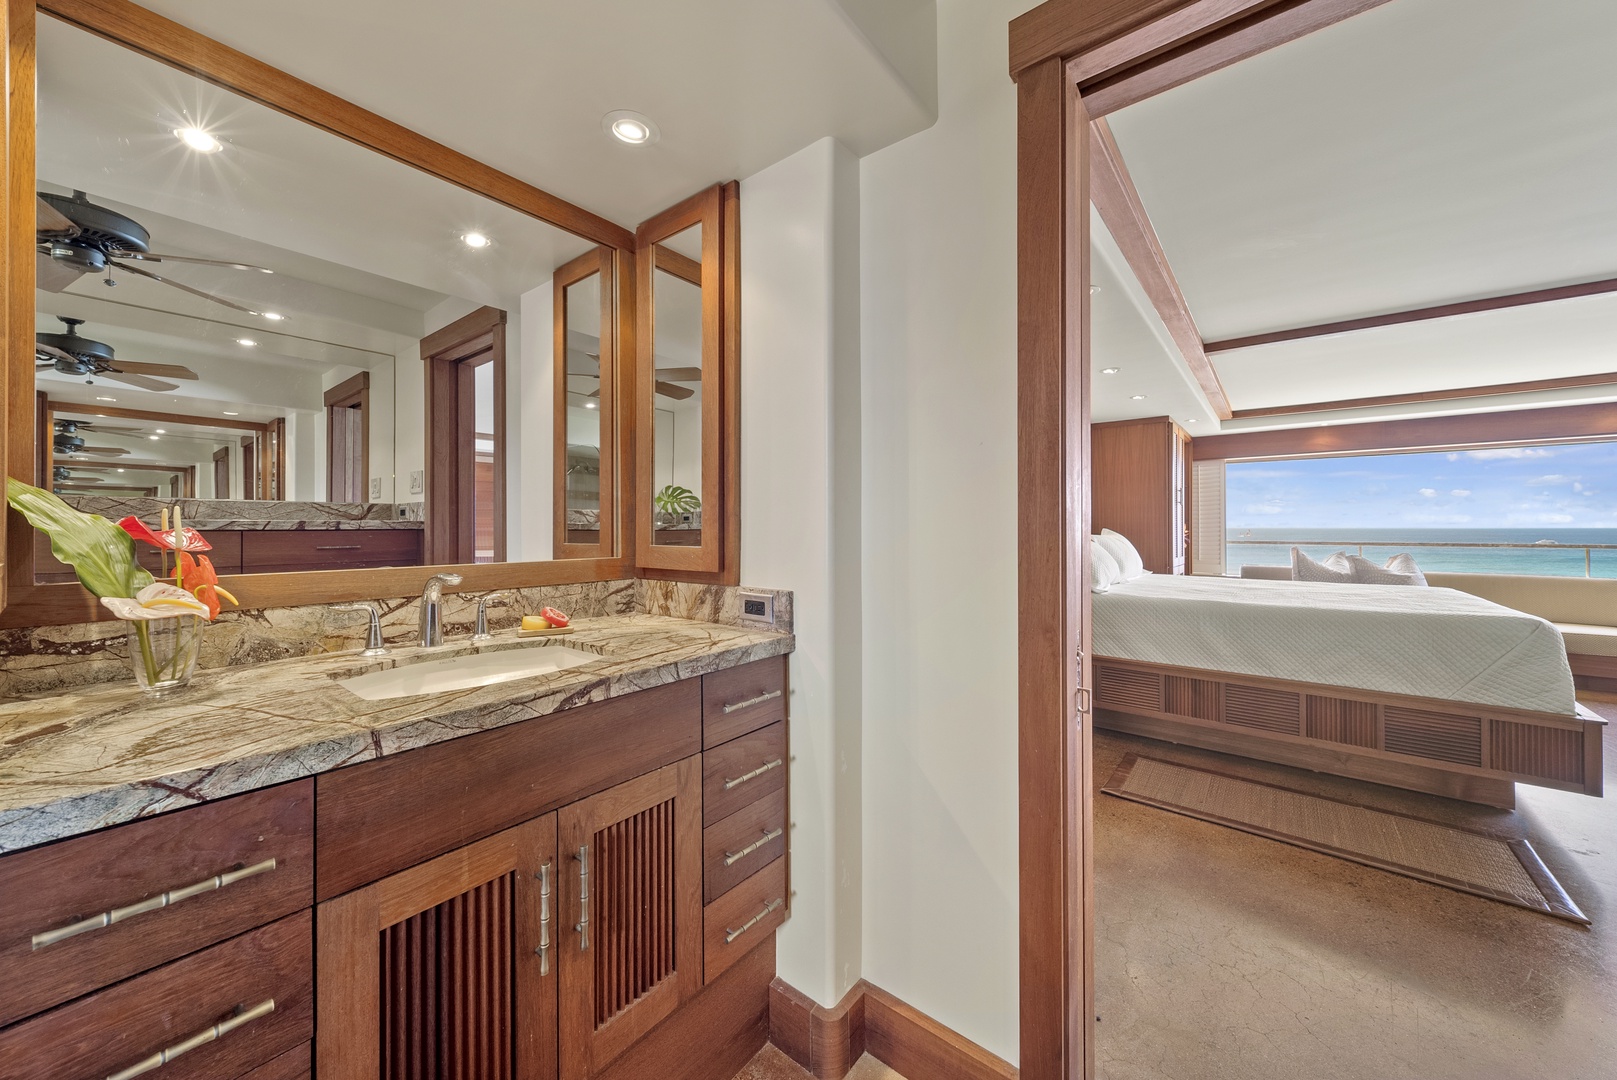 Honolulu Vacation Rentals, Diamond Head Sunset - Ensuite full bathroom with single vanity